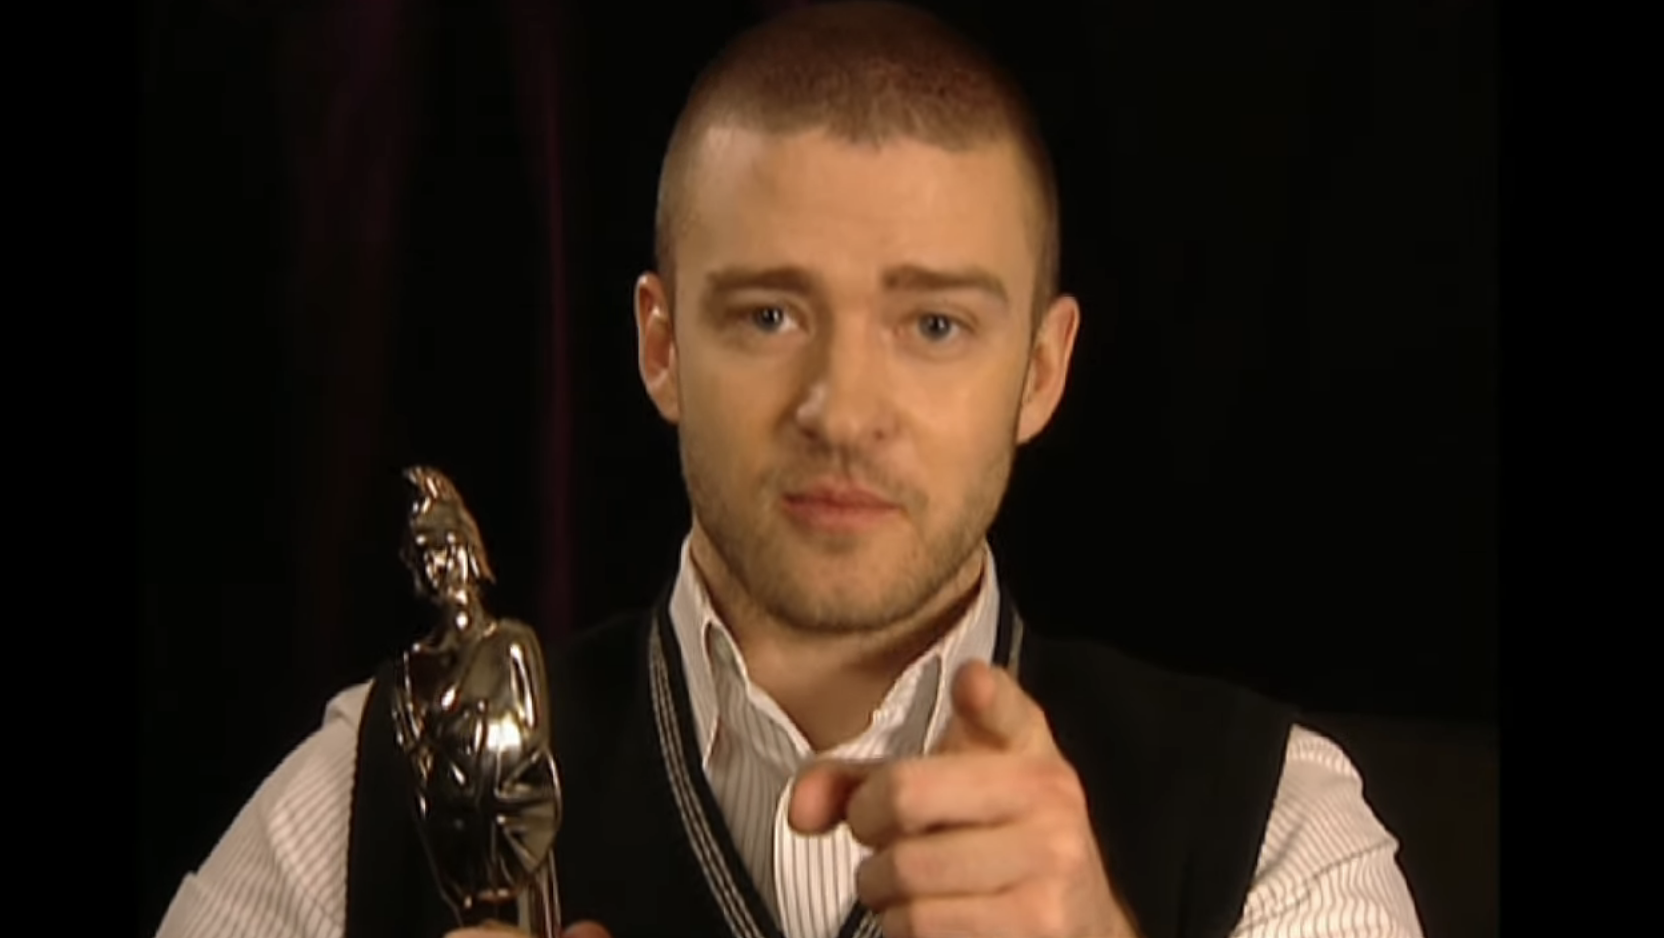 Closeup of Justin holding an award